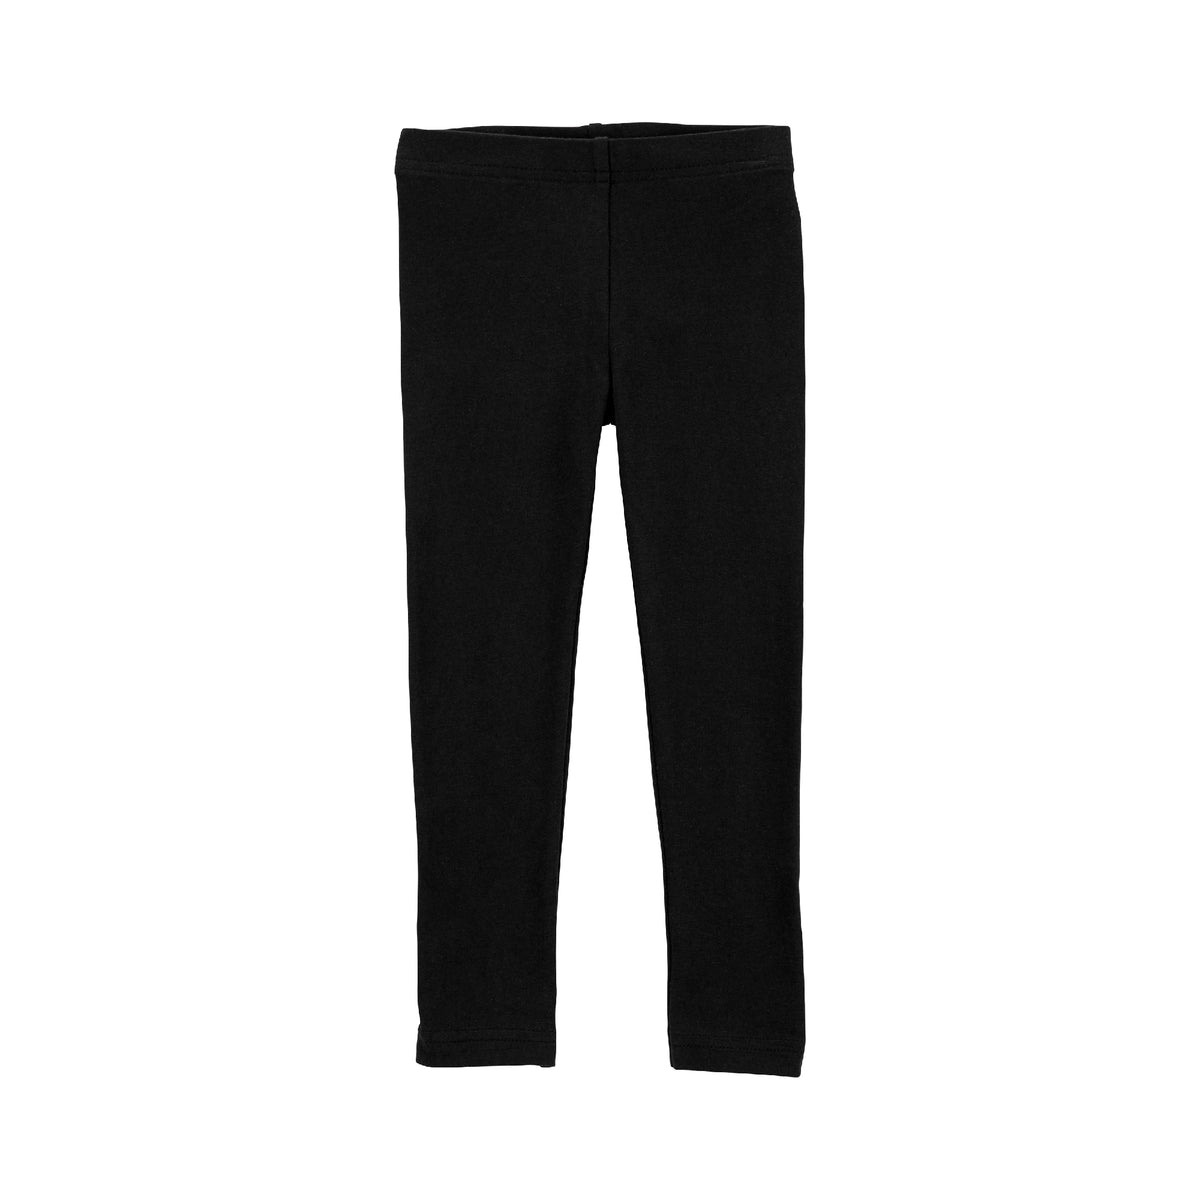 OshKosh black comfortable inner pants (2T-5T)